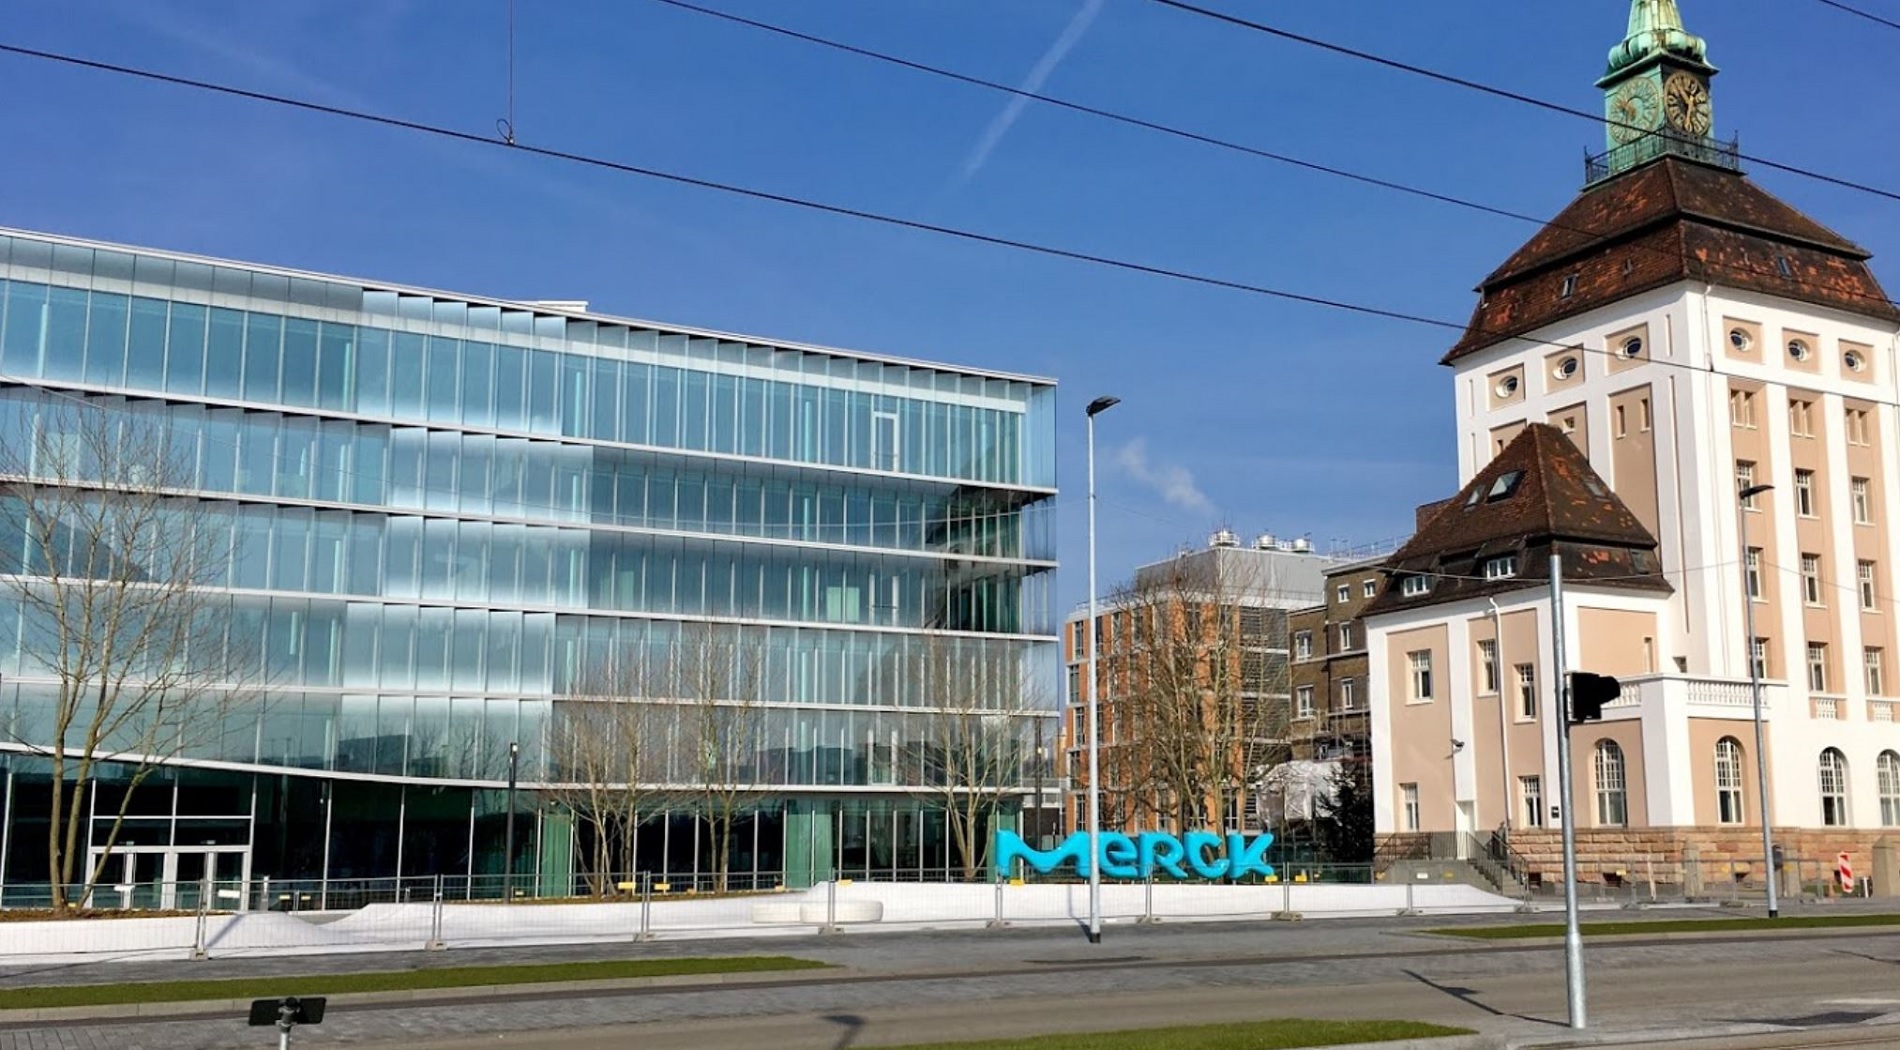 Η Merck επενδύει 275,5 εκατομμύρια δολάρια σε νέα εγκατάσταση παραγωγής στην Ελβετία